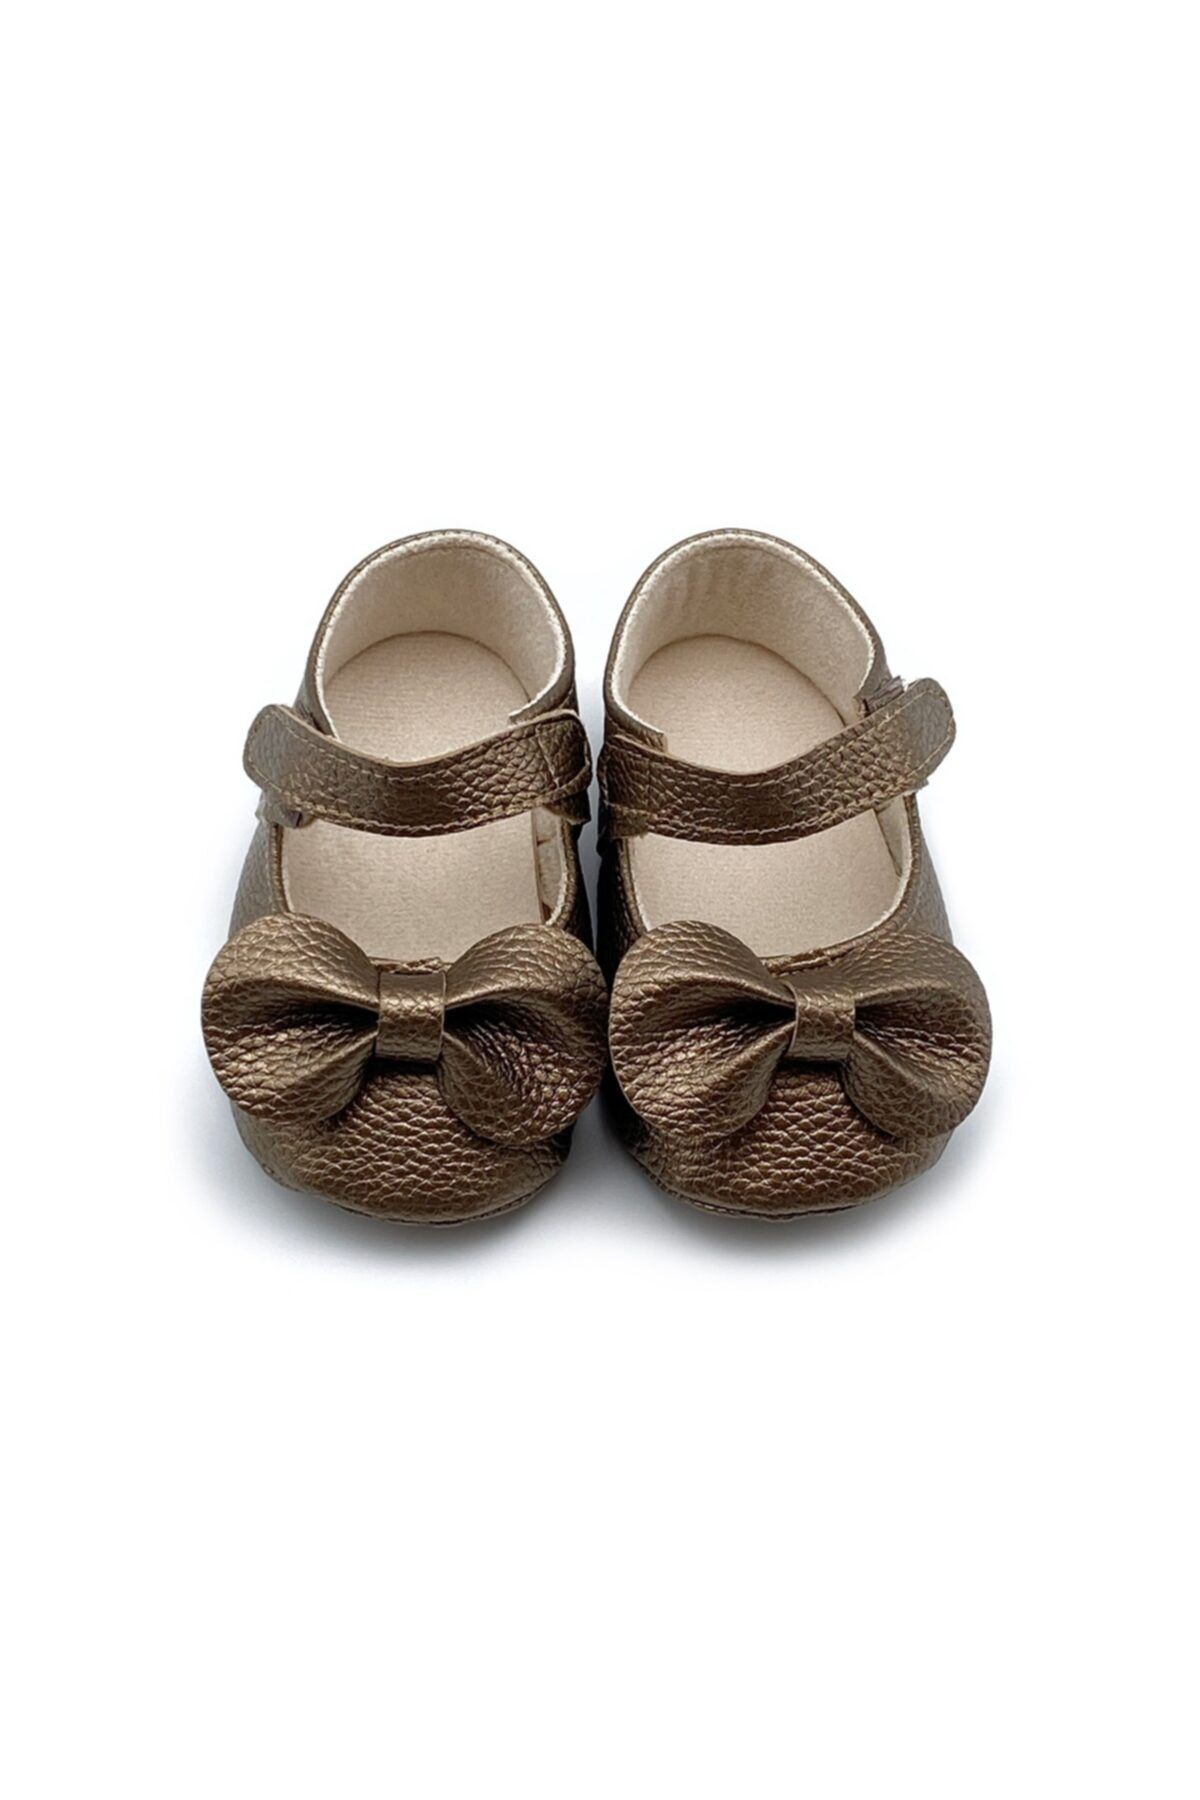 Genel Markalar Kız Bebek Gold Altın Sarı Renk El Yapımı Fiyonklu Cırtlı Babet Ayakkabı